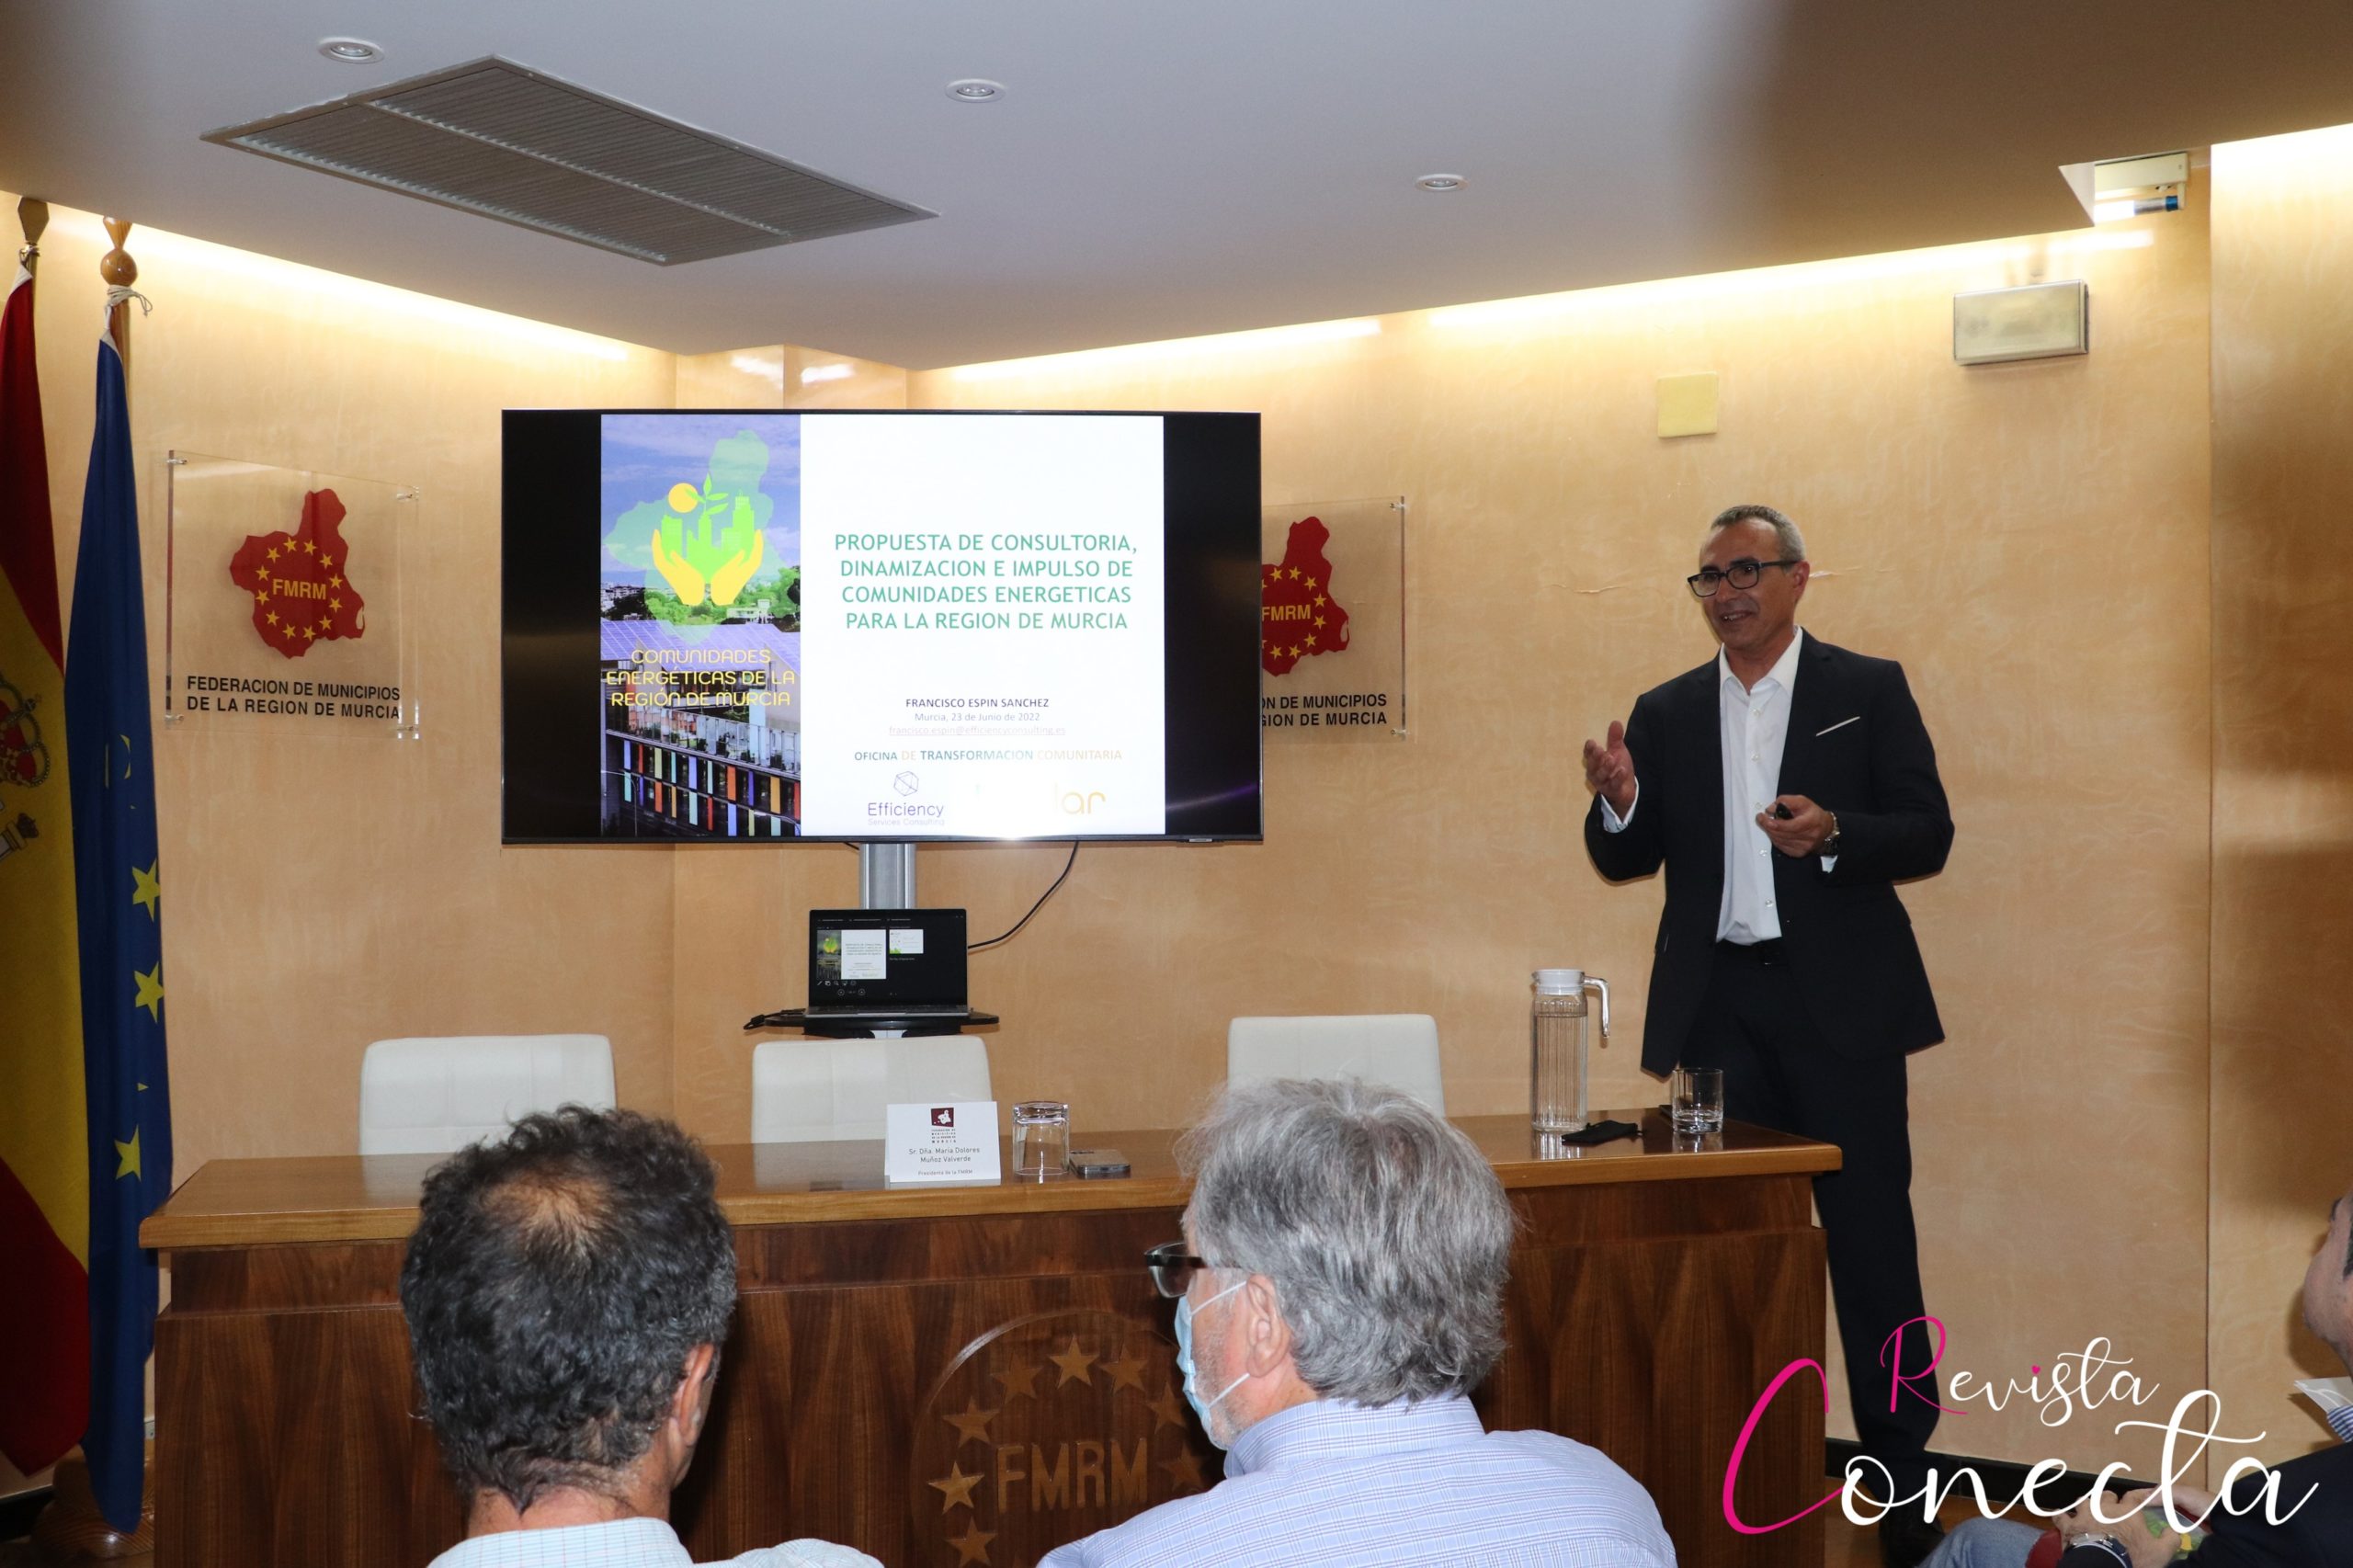 Efficiency Services Consulting y La Solar Energía presentan el nuevo proyecto de “Comunidades Energéticas de la Región de Murcia”